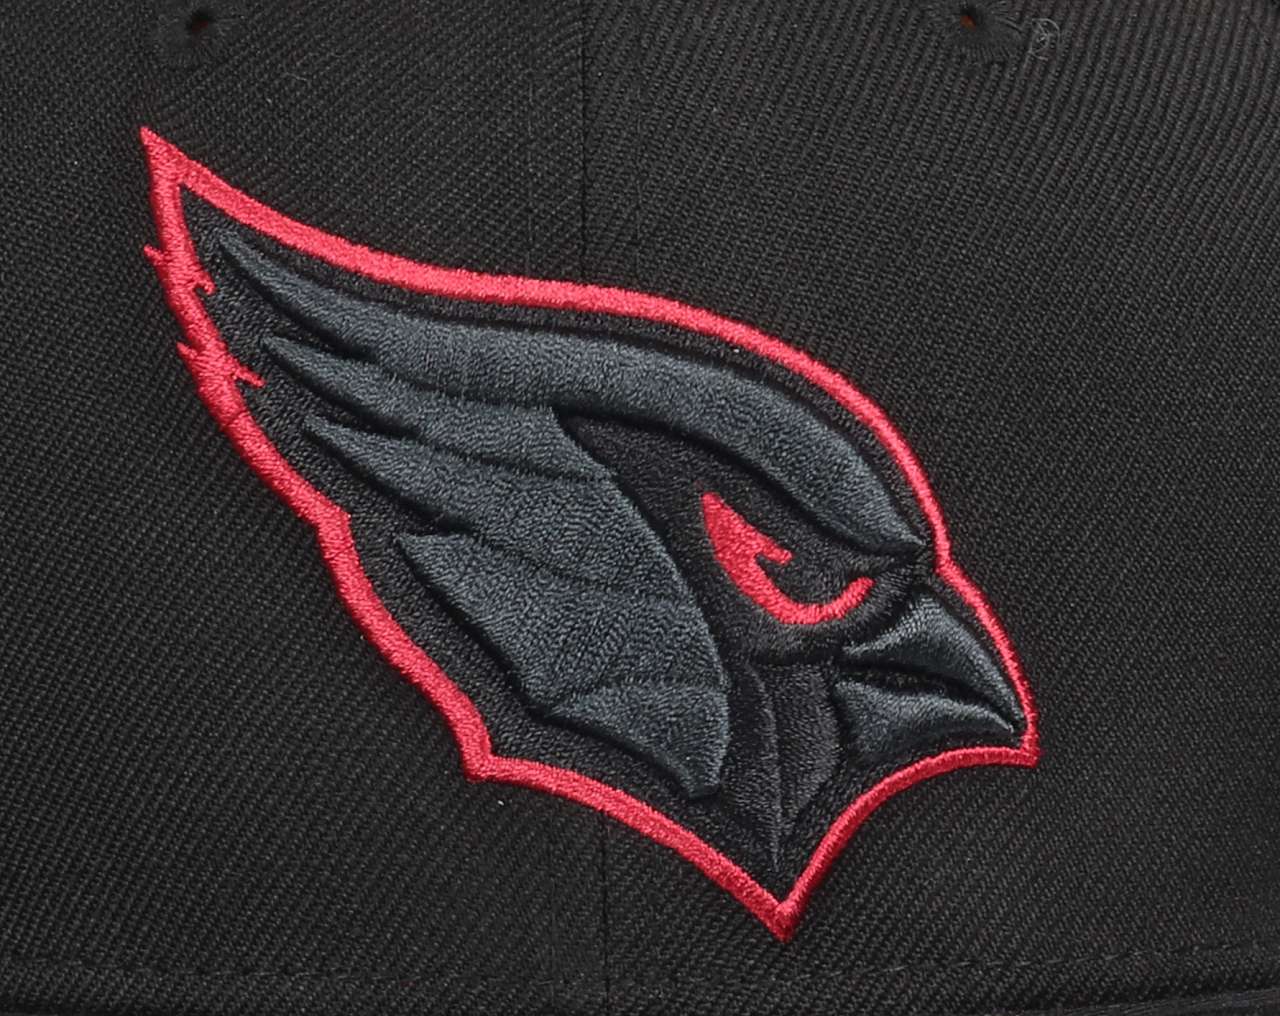 Arizona Cardinals NFL Black 9Fifty Original Fit Snapback Cap New Era